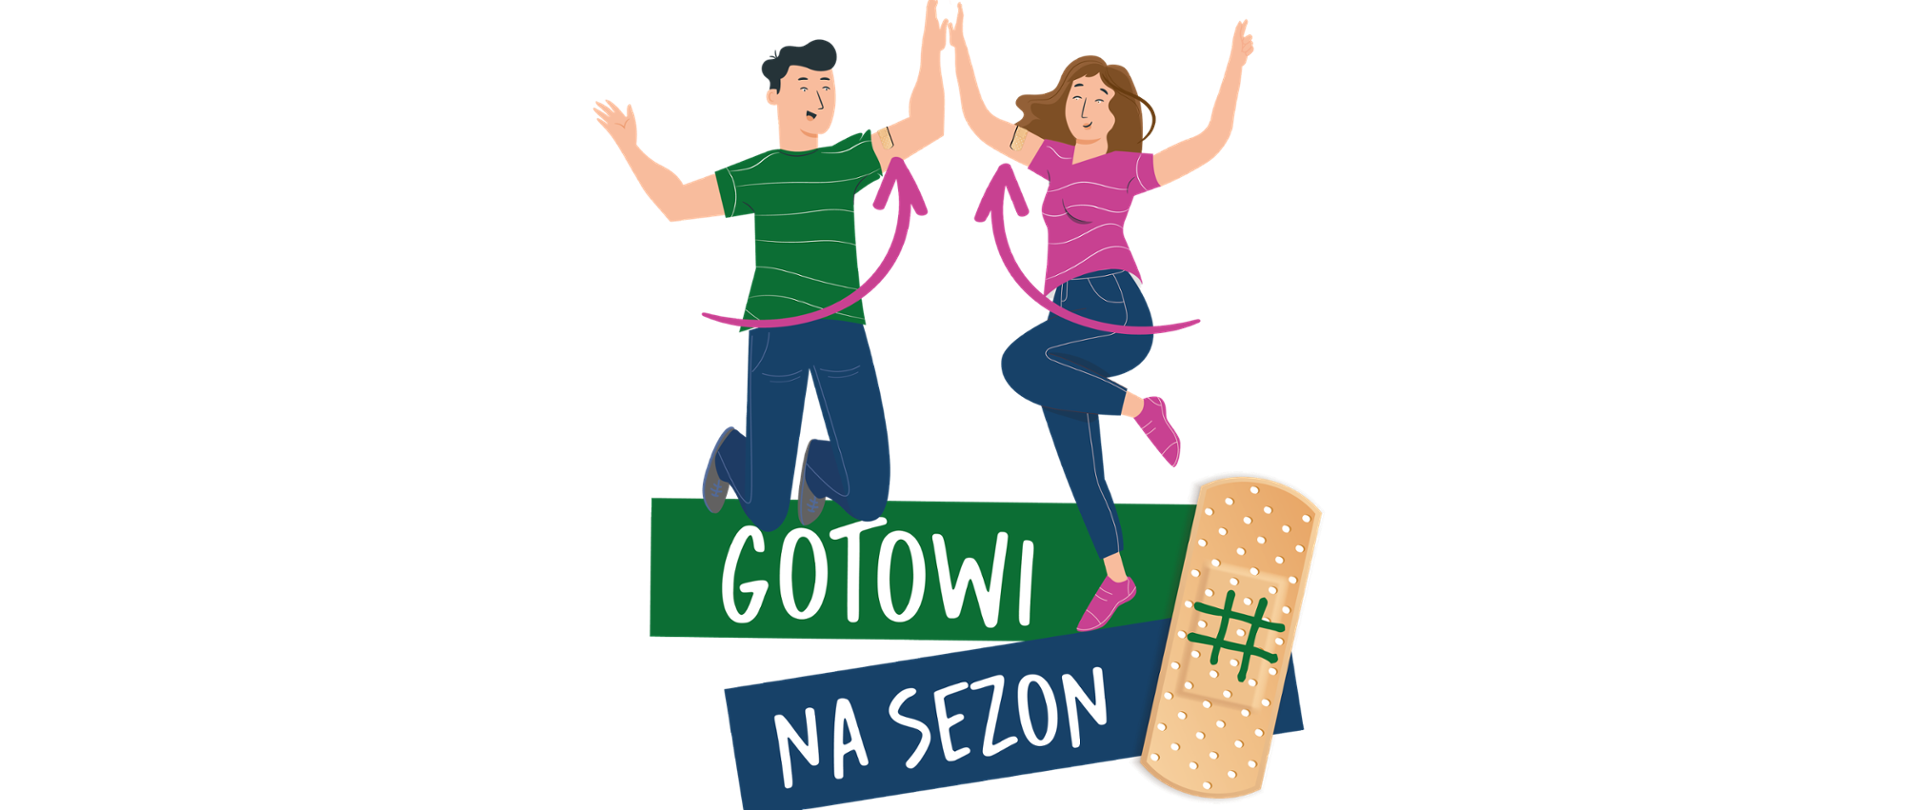 #GOTOWINASEZON